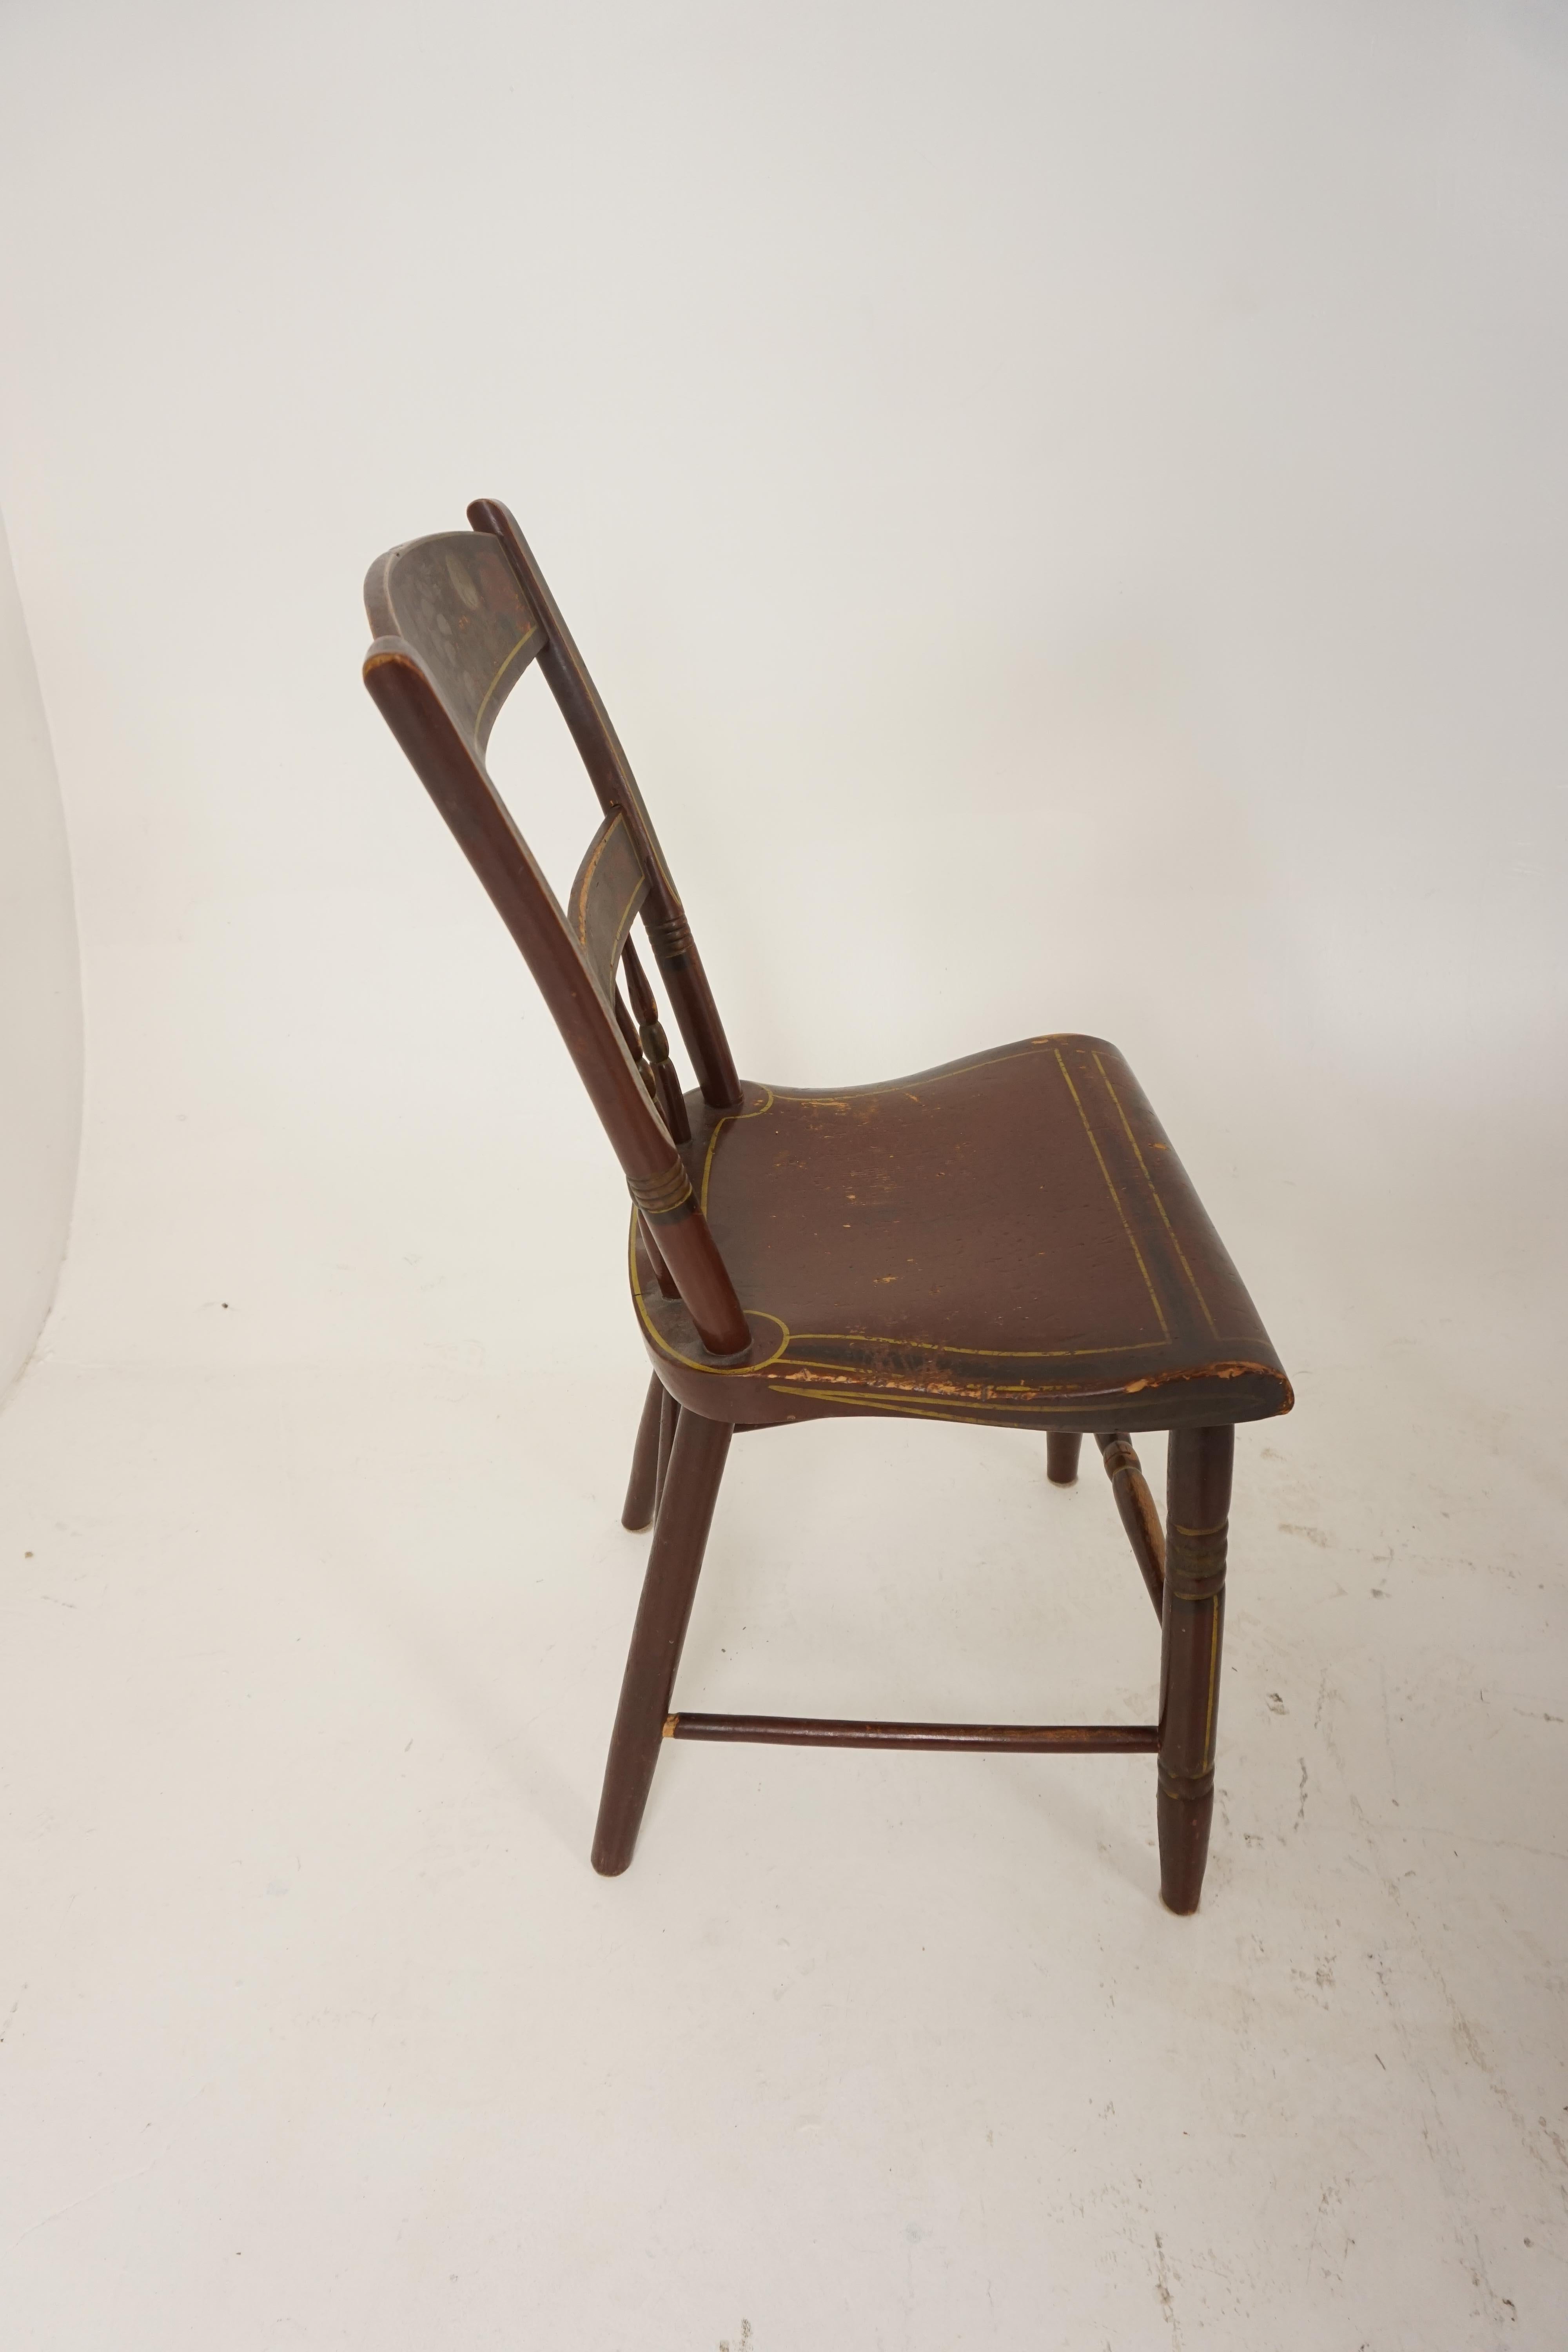 pennsylvania dutch chair